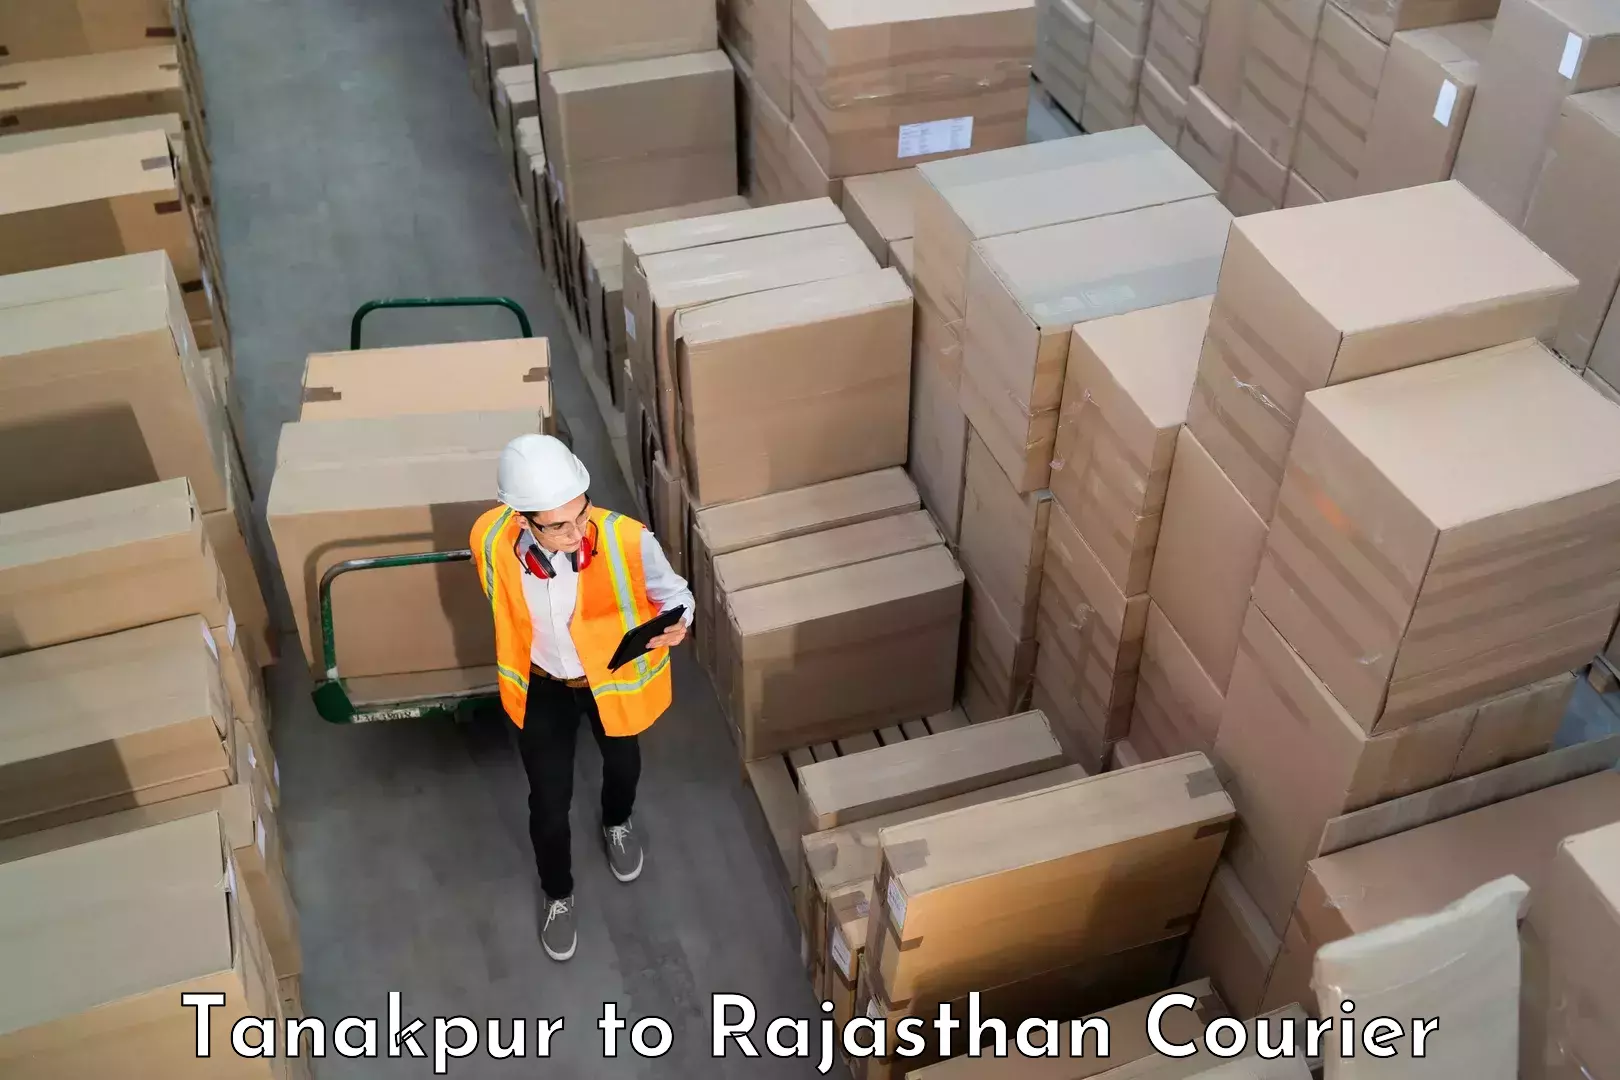 Same day luggage service Tanakpur to Rajasthan